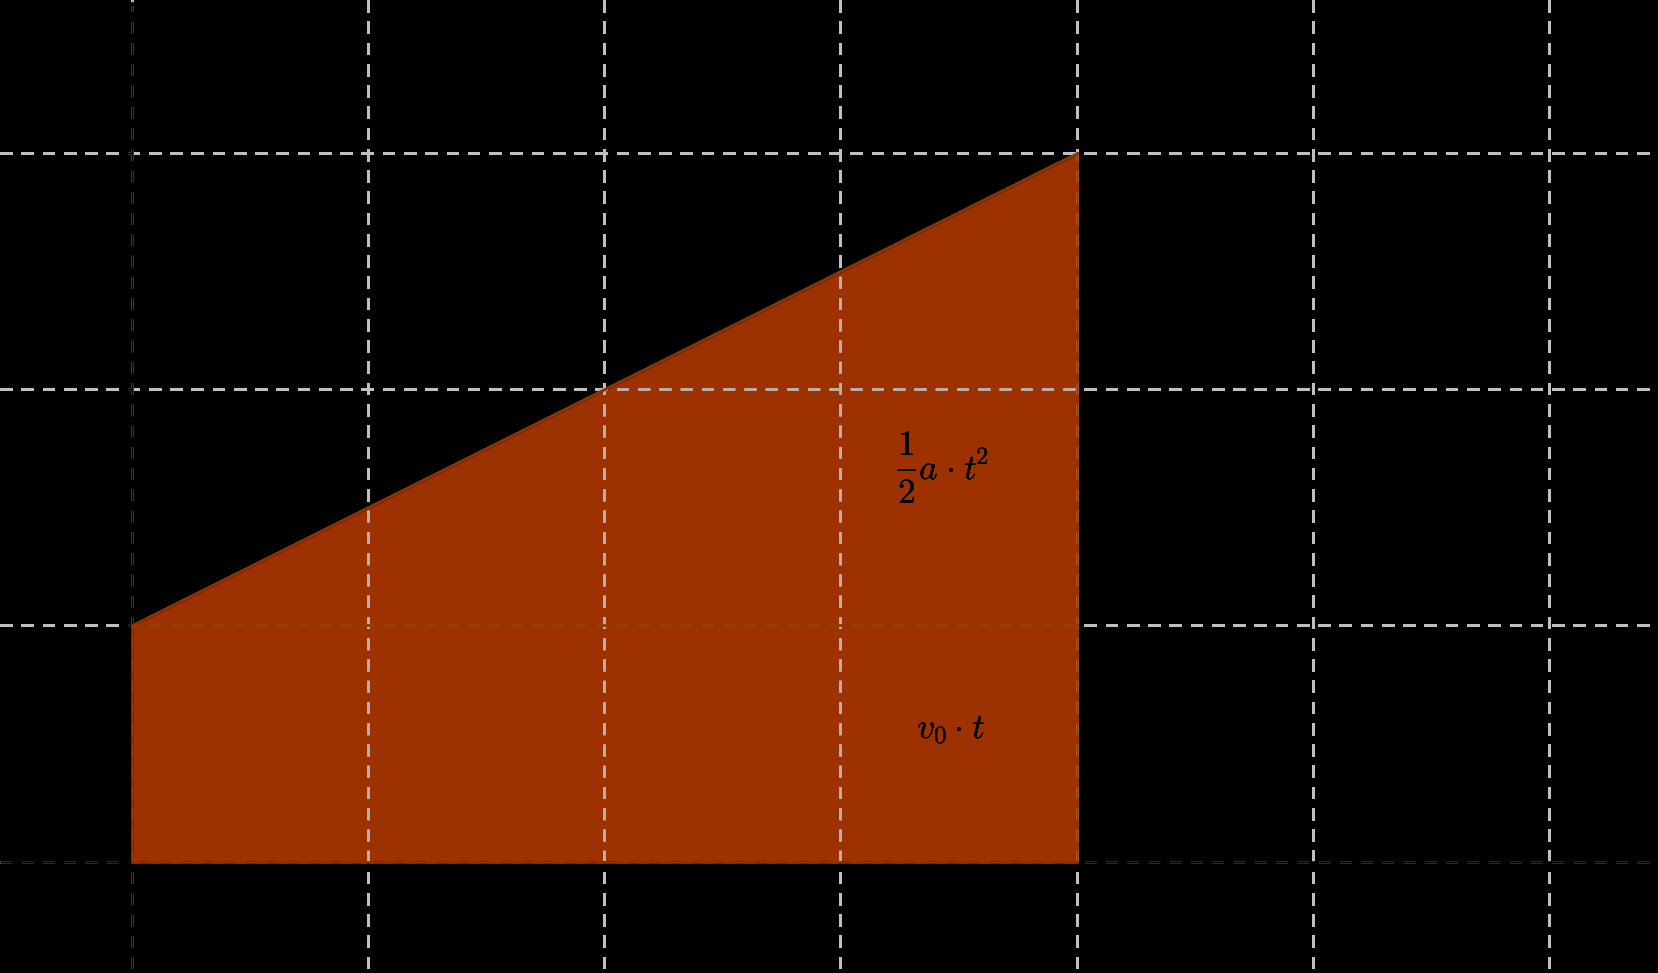 Beispiel Ein Körper mit der Anfangsgeschwindigkeit v 0 = 2m/s beschleunigt während 8s mit einer Beschleunigung von a = 0.5m/s 2. Für die Endgeschwindigkeit findet man v = v 0 + a t = 2m/s + 0.